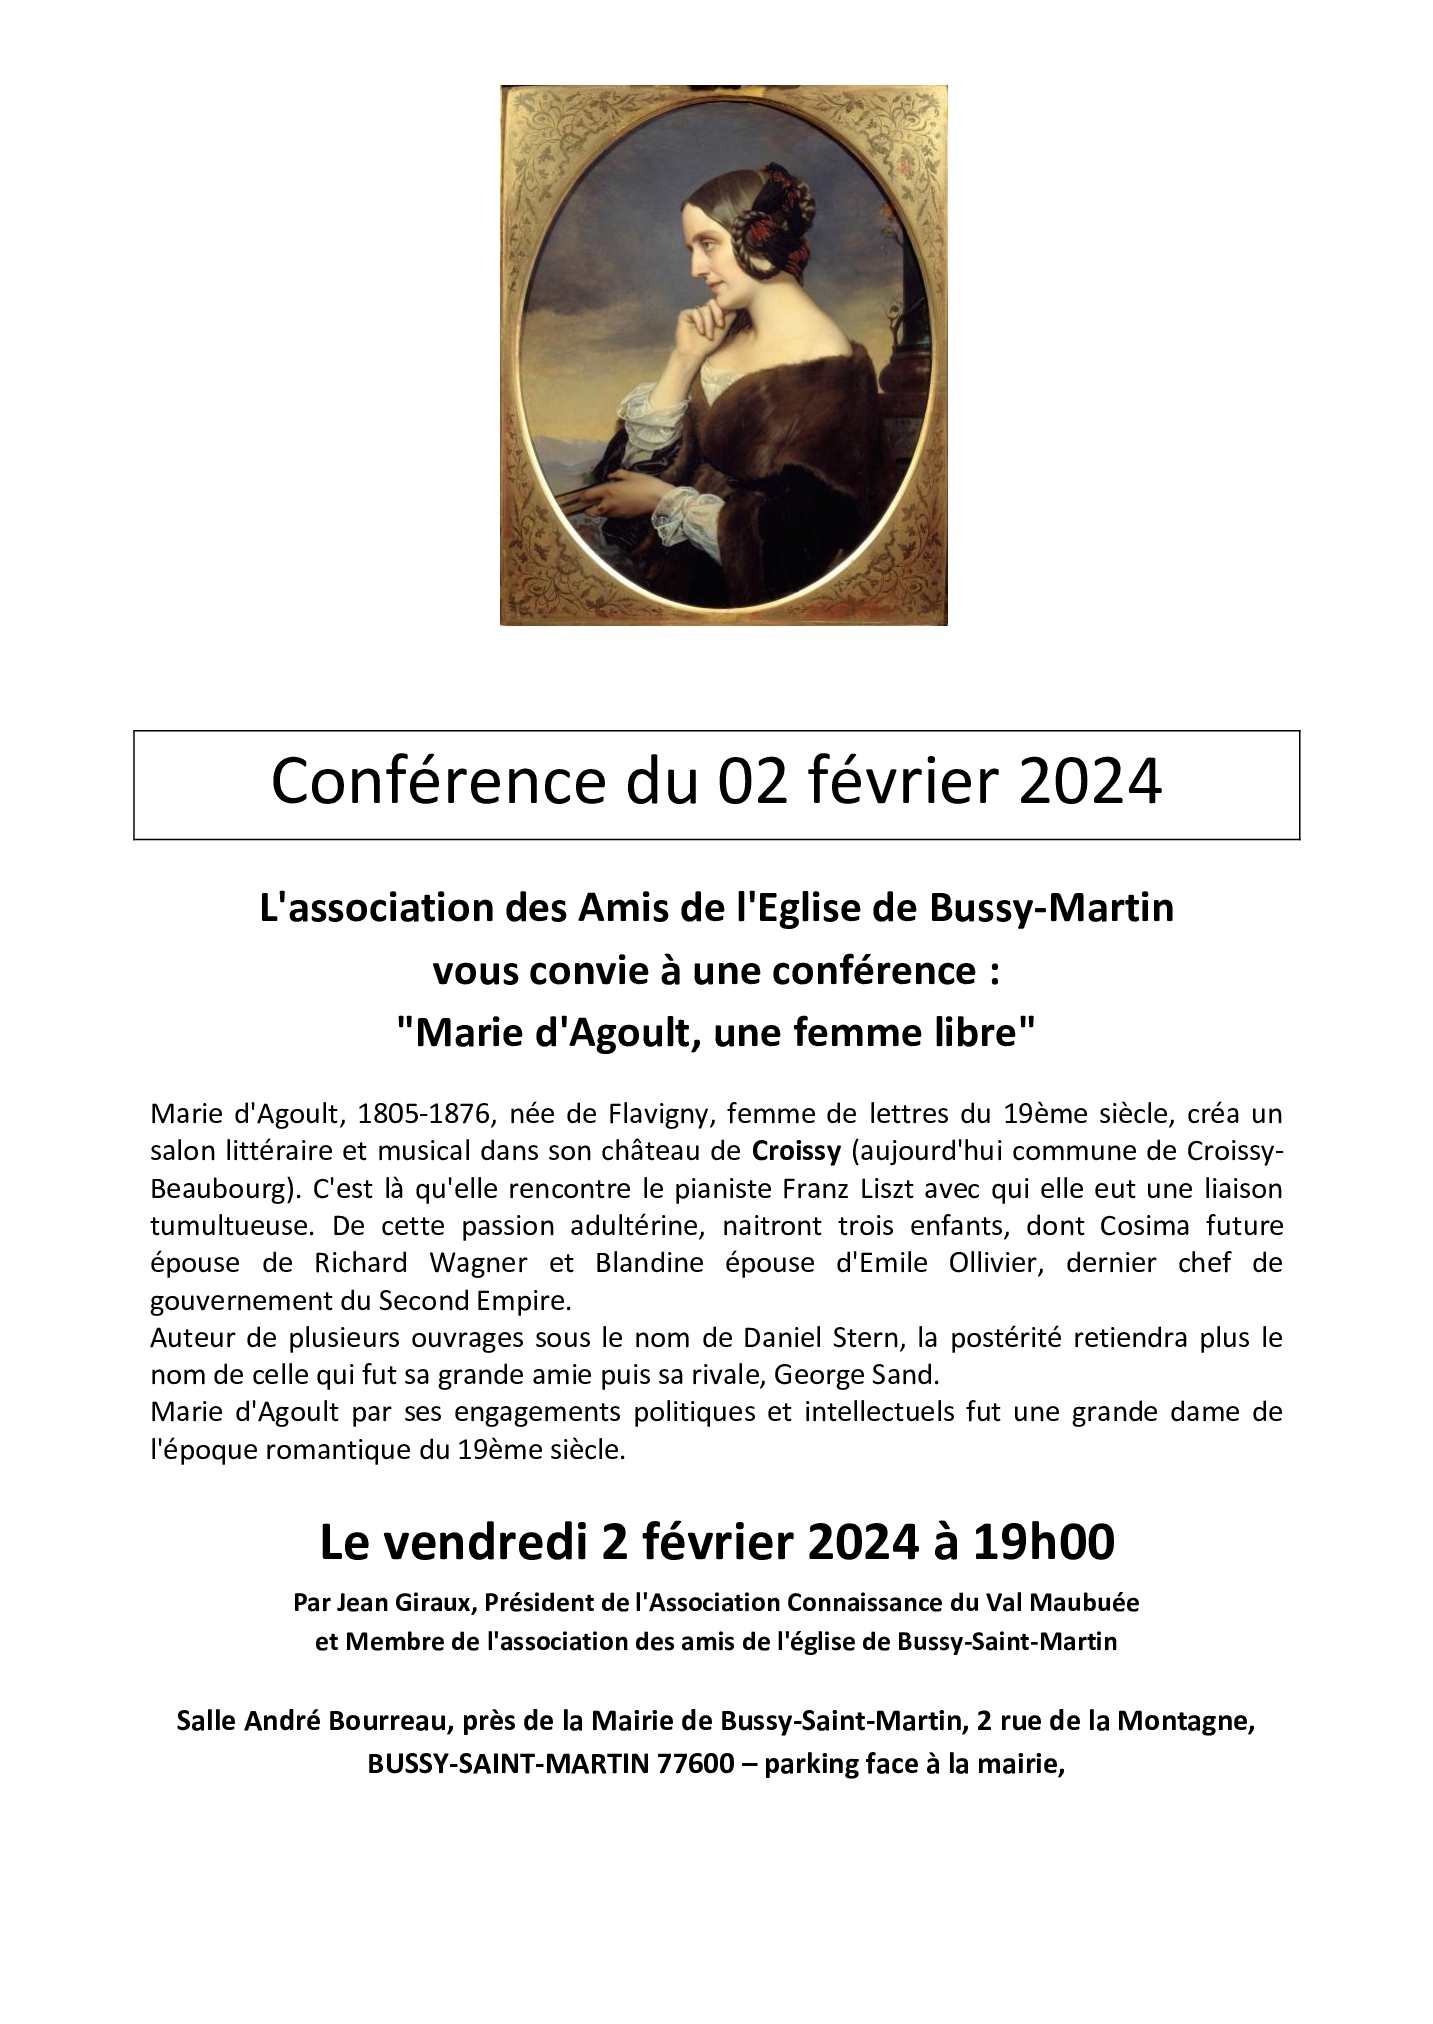 Conférence du 2 février 2024